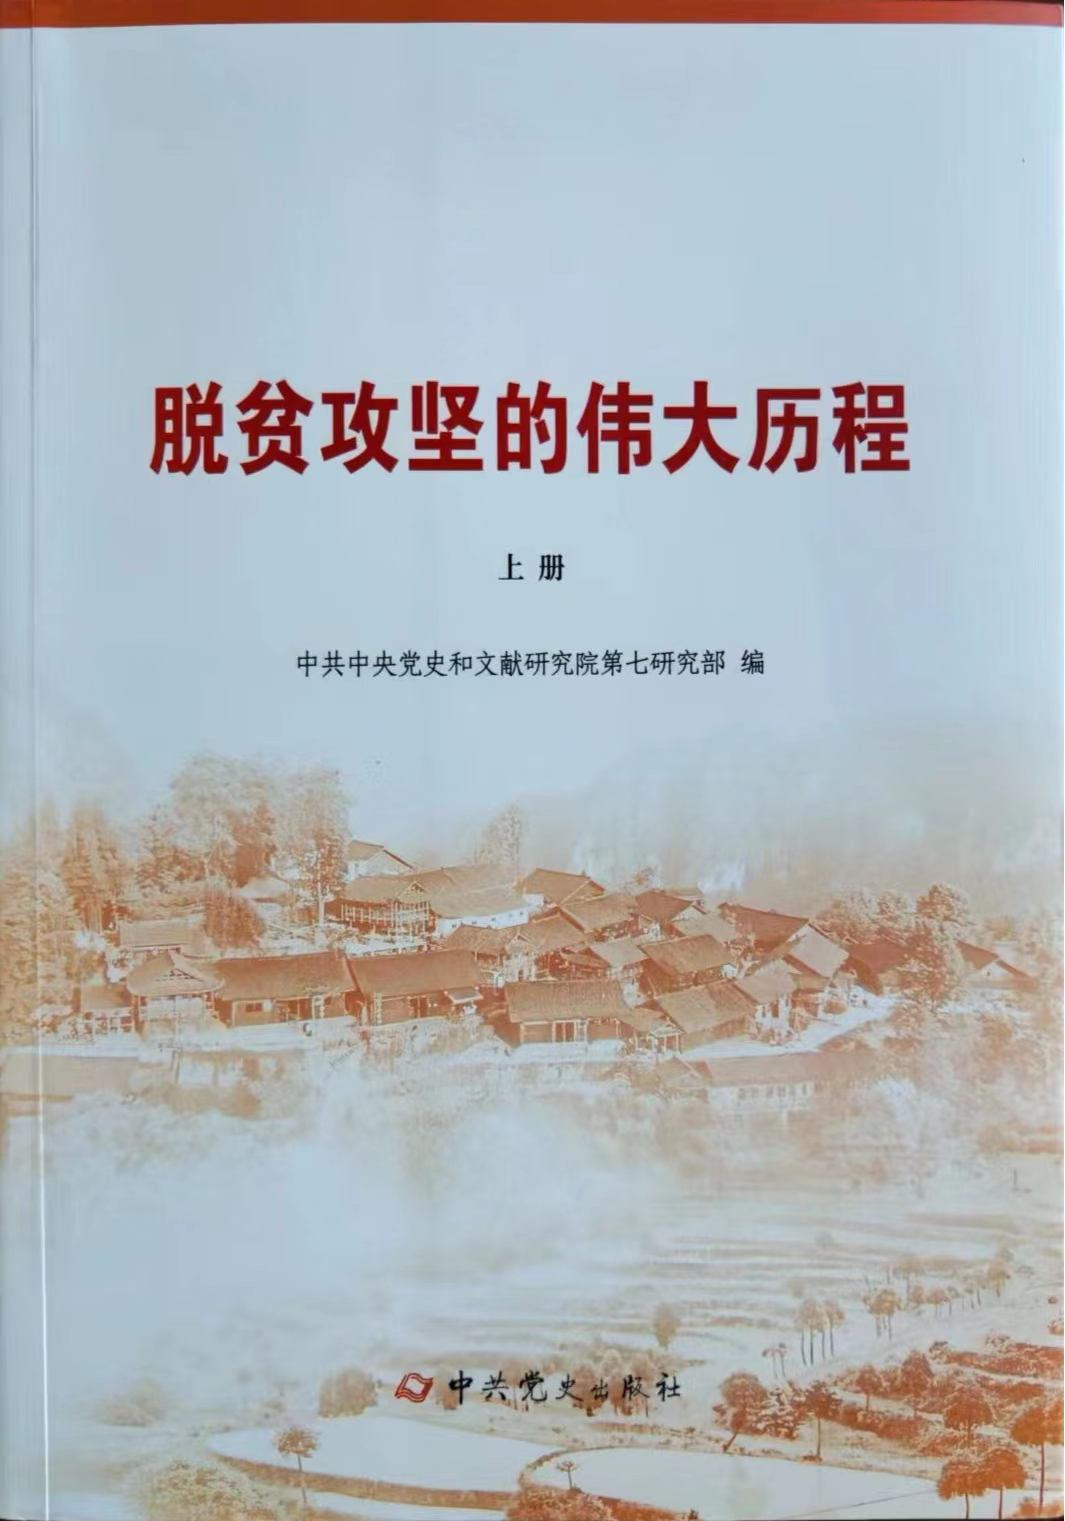 河南省委党史和地方史志研究室参与撰写的 《脱贫攻坚的伟大历程》一书近日出版发行